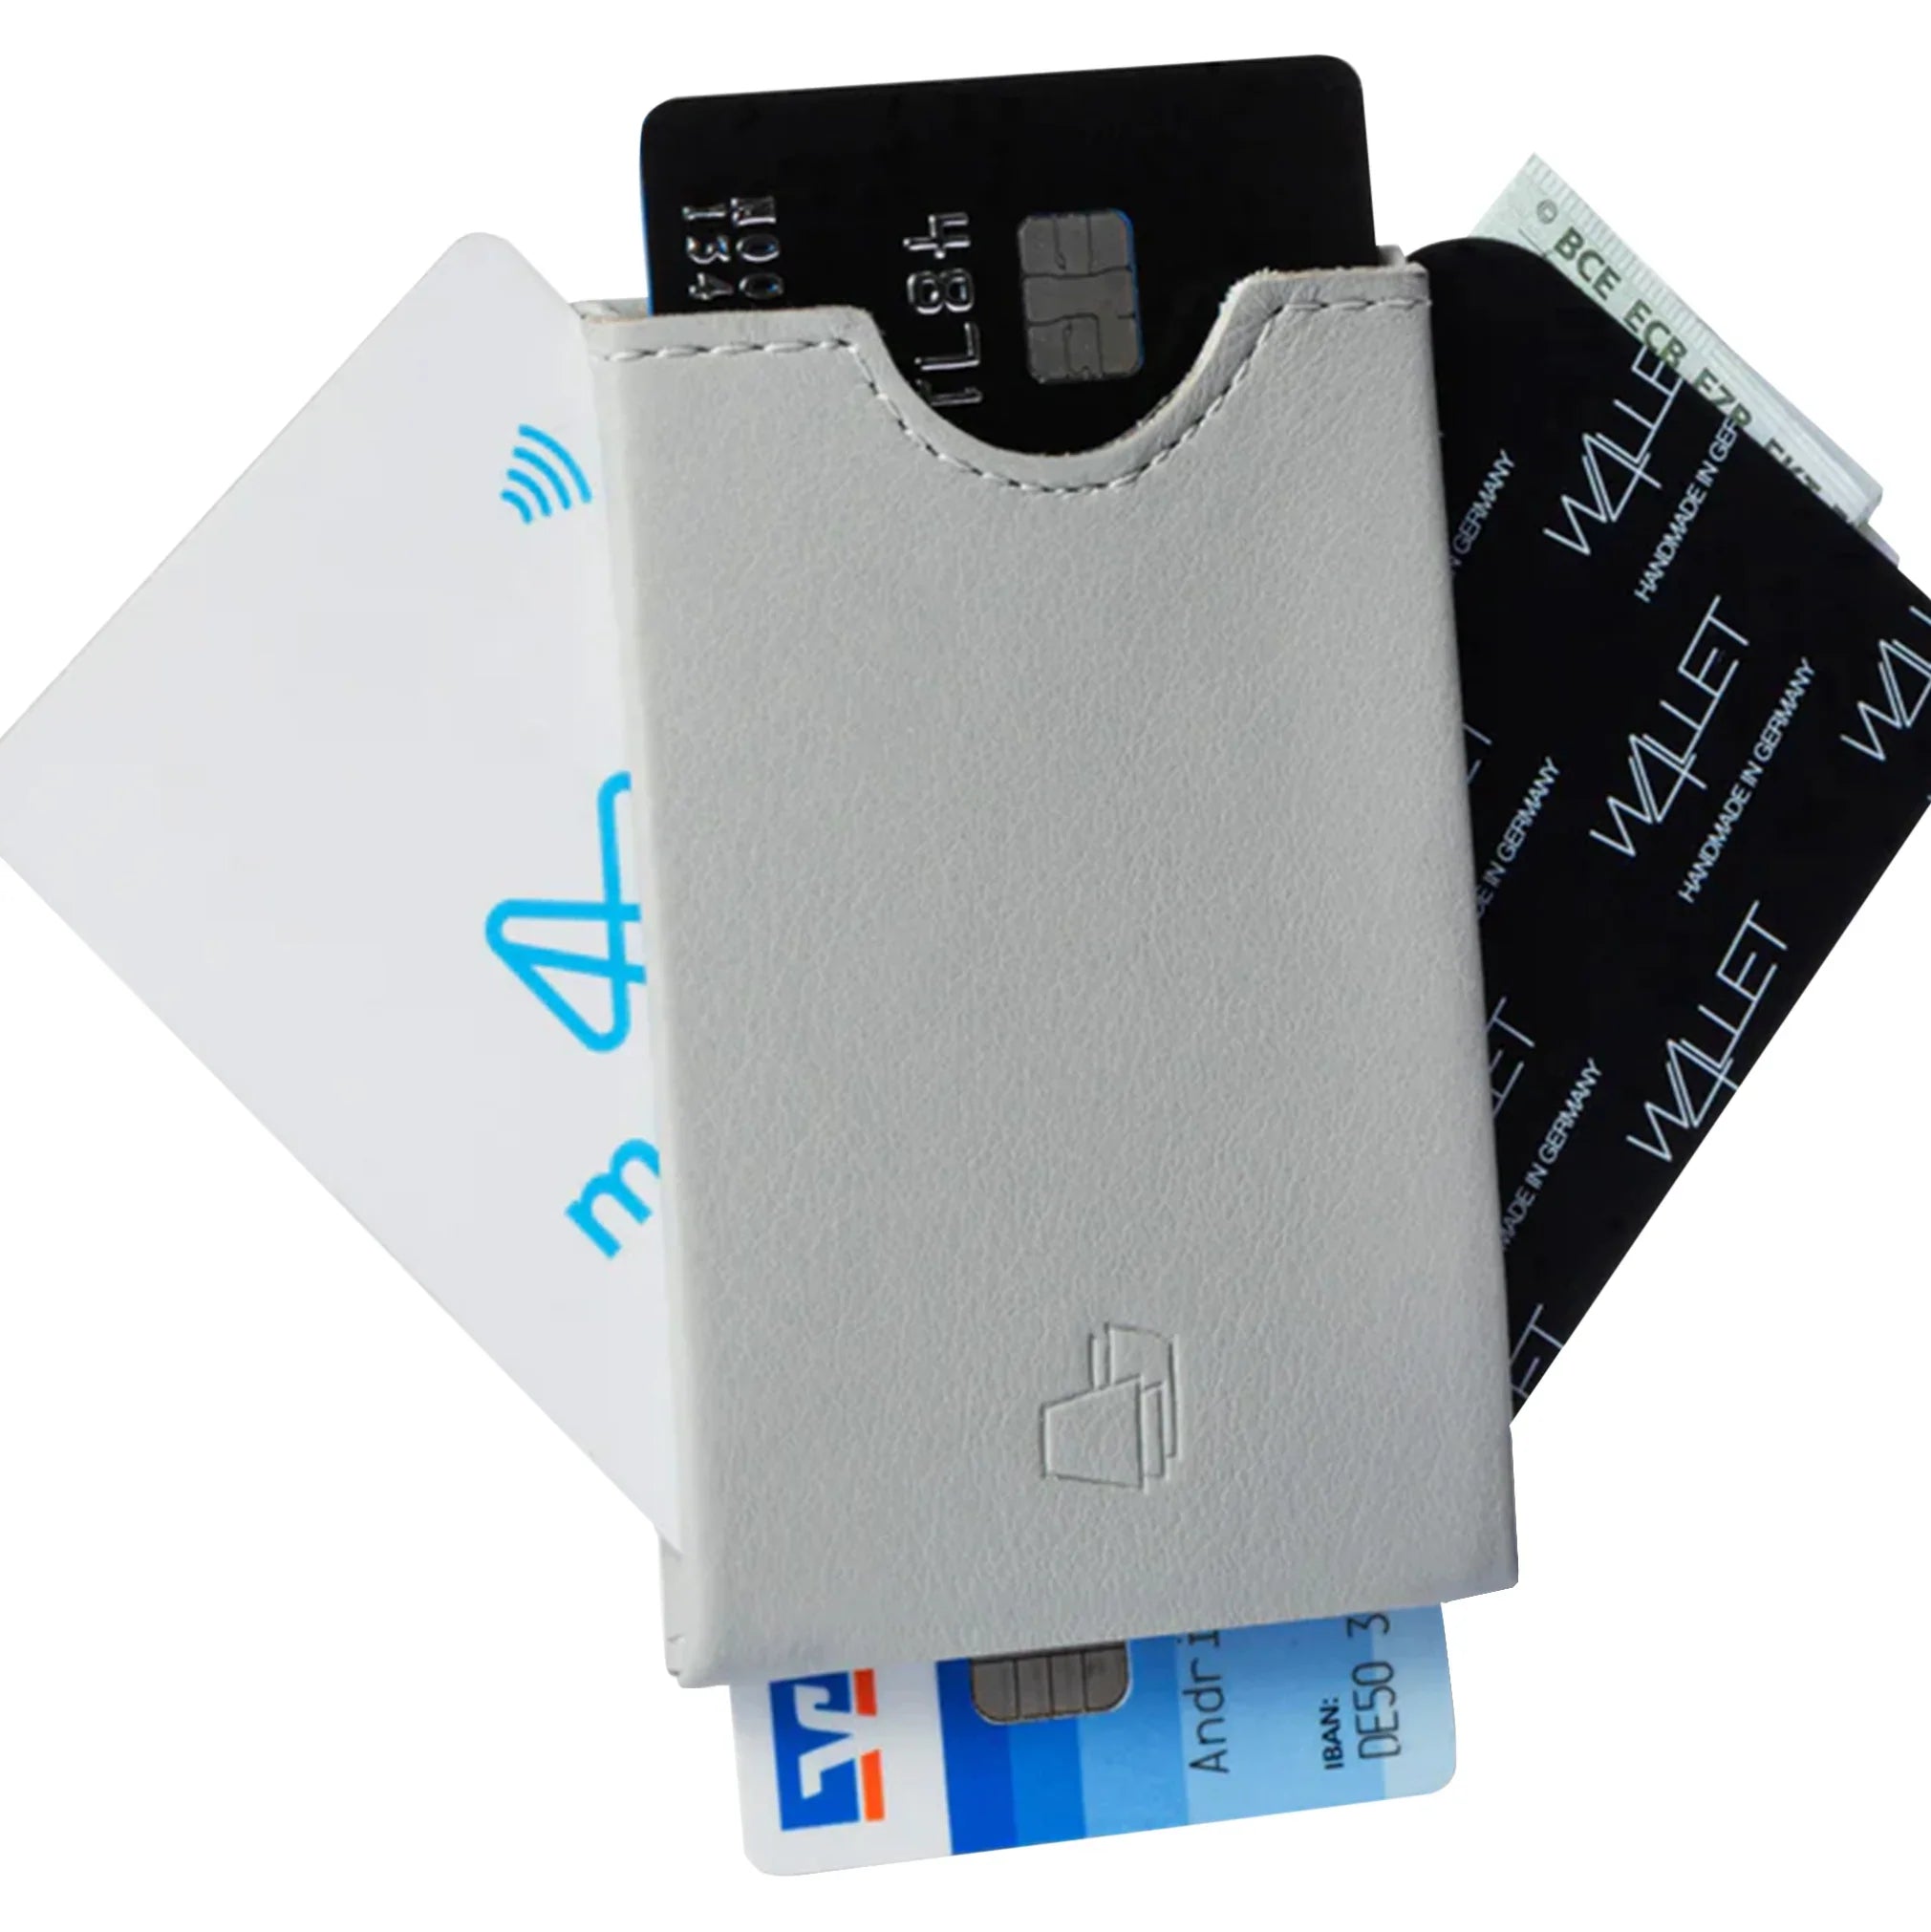 W4llet smooth leather credit card holder 9 cm - platinum